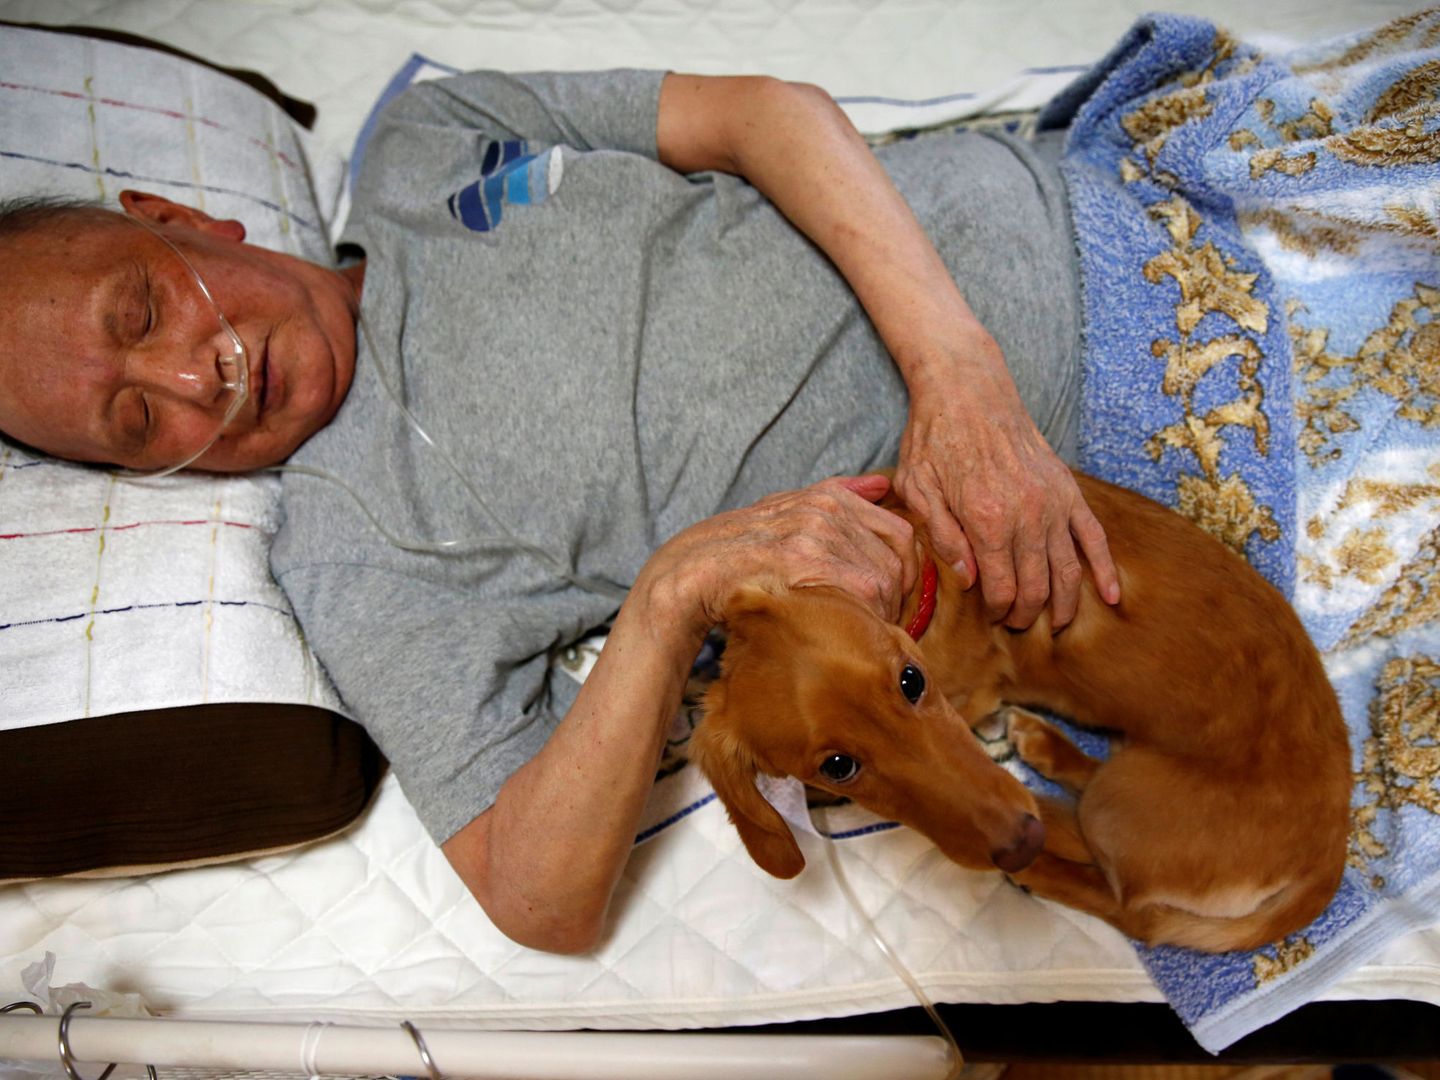 Las personas enfermas también aprovechan los beneficios de dormir con perros (Reuters/Kim Kyung-Hoon)